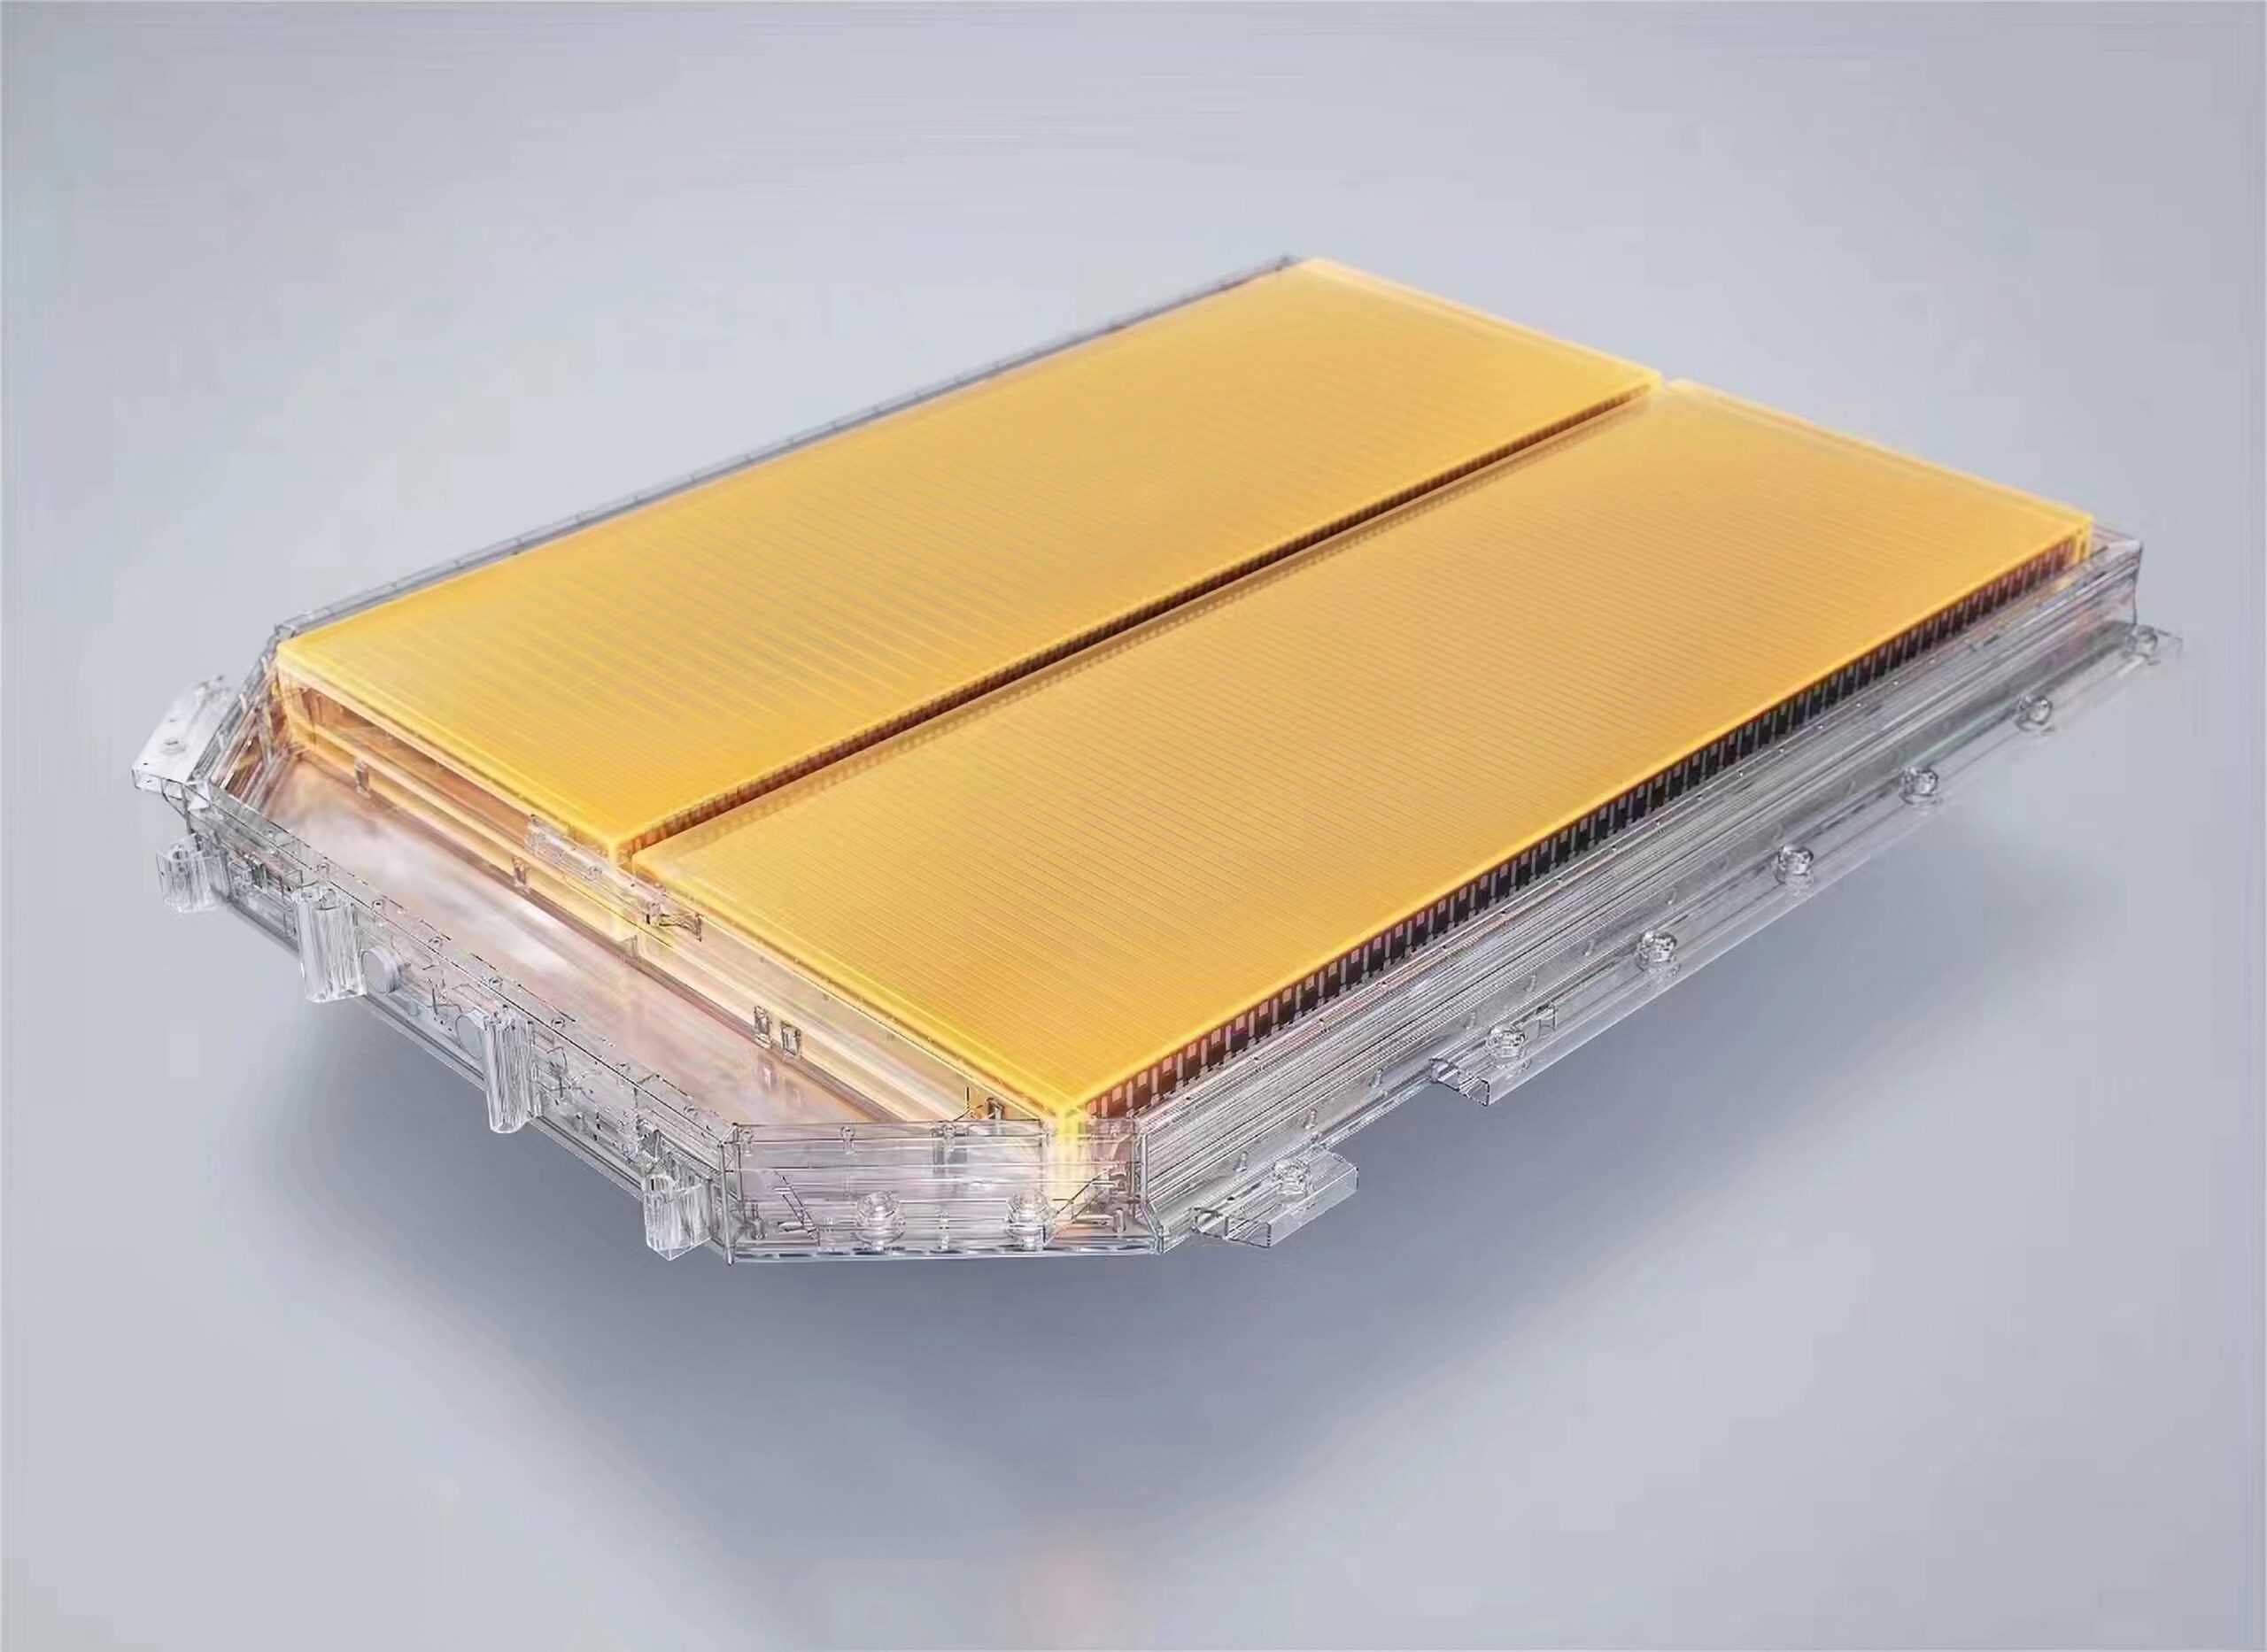 Zeekr's New Golden Batteries Are ... Golden - CleanTechnica